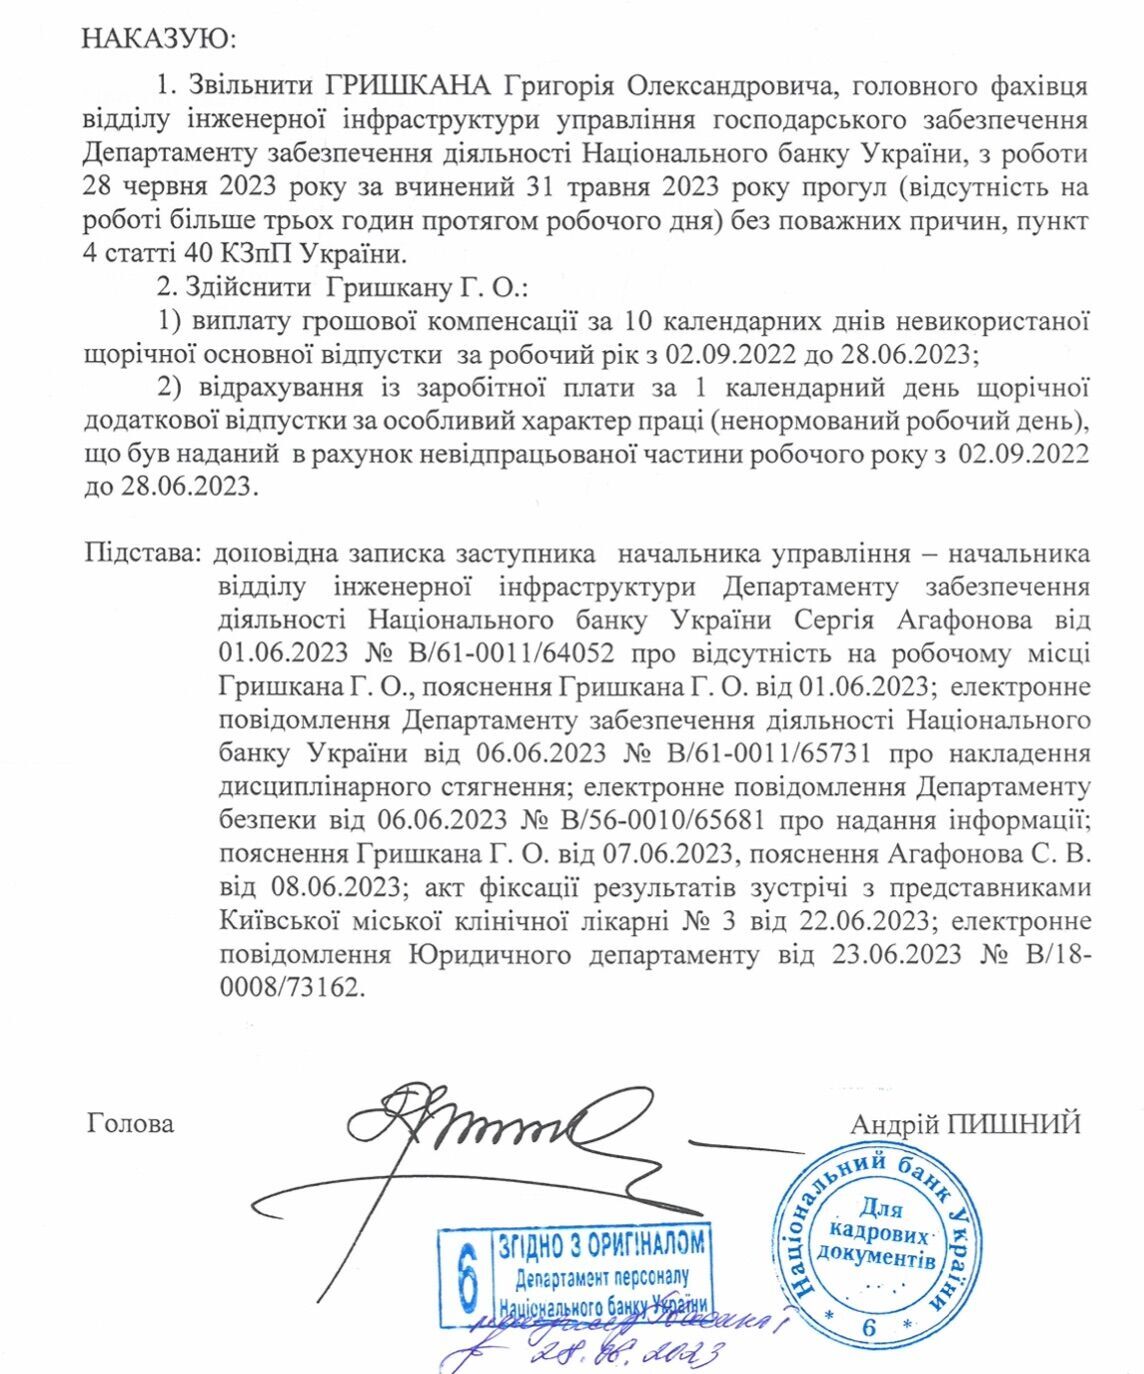 Наказ НБУ про звільнення Григорія Гришкана з роботи